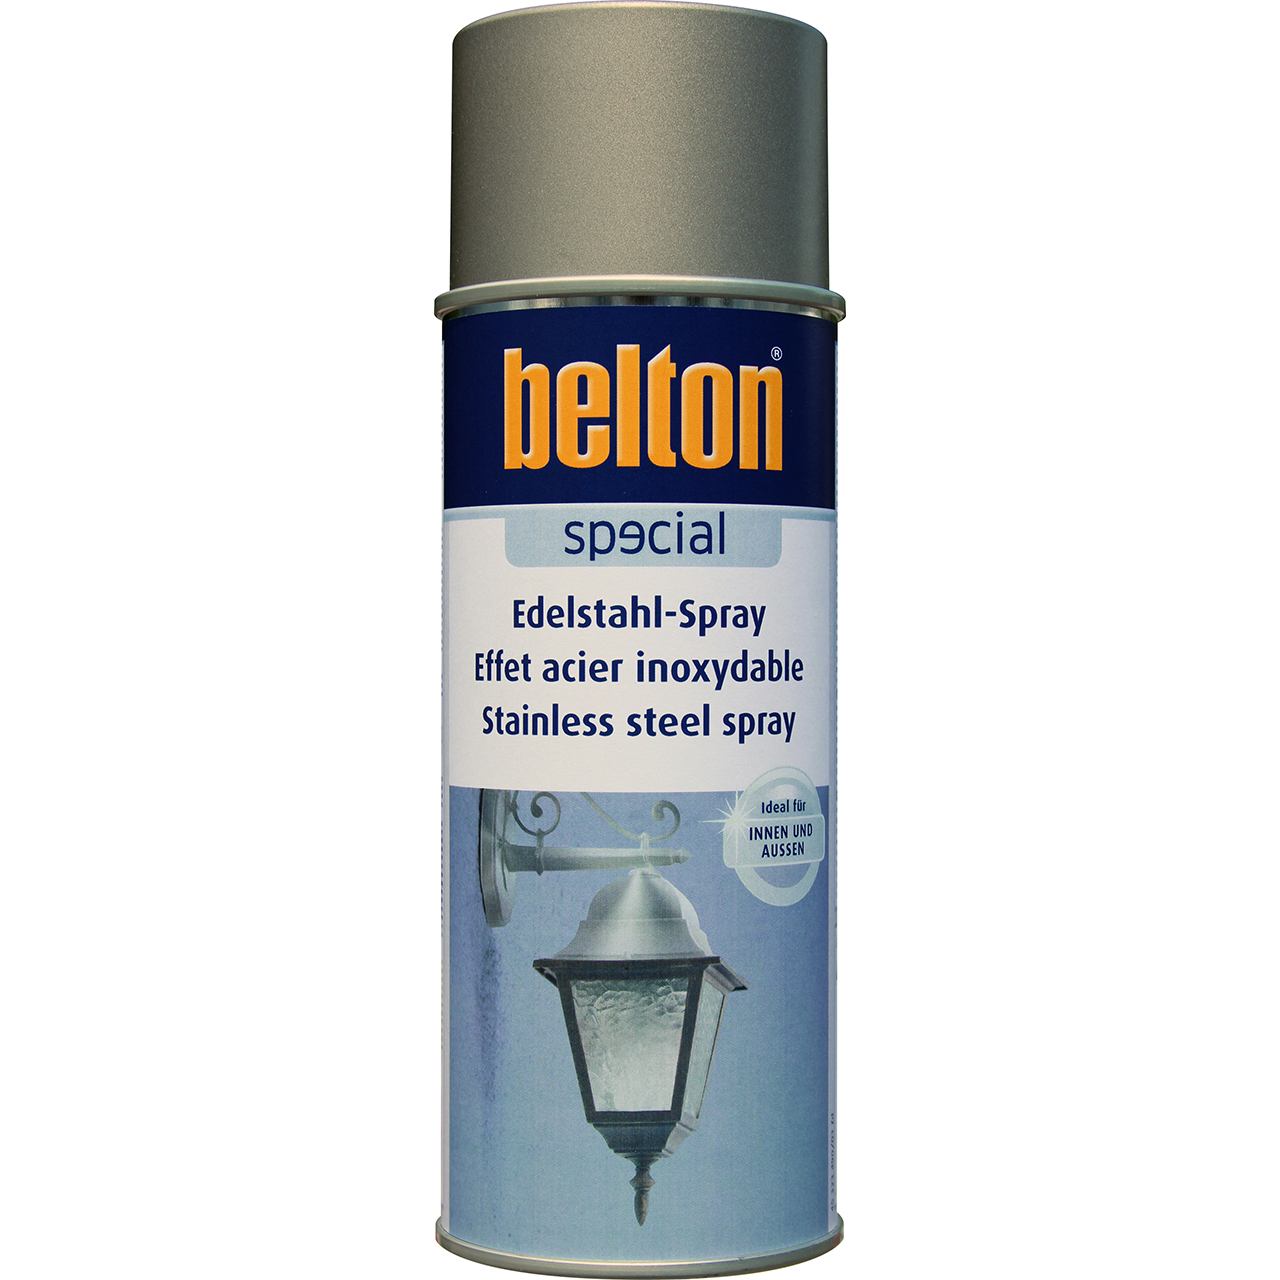 belton Special Edelstahl-Spray, 400ml